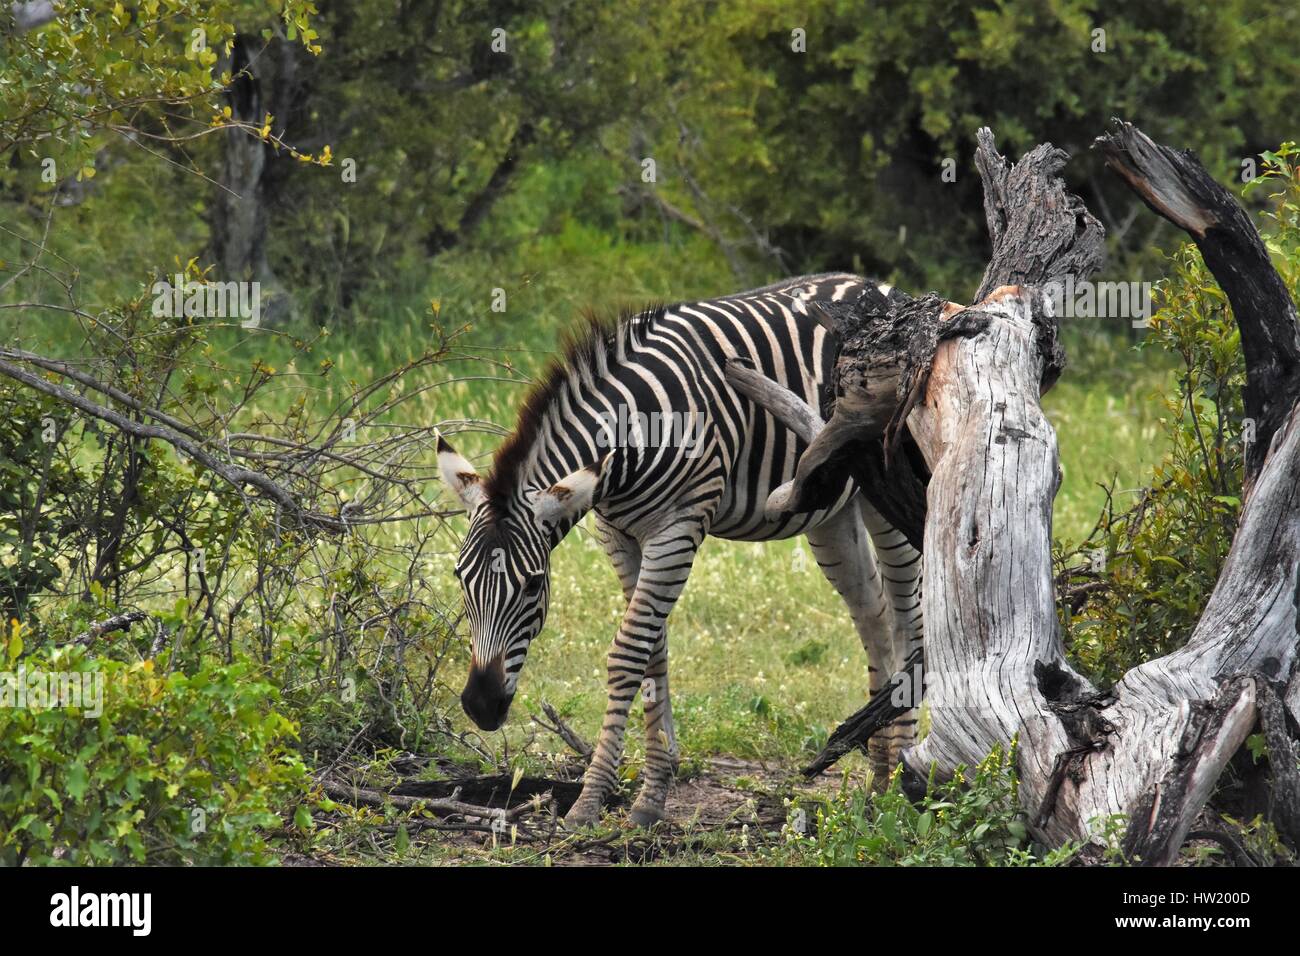 zebras in Africa Stock Photo